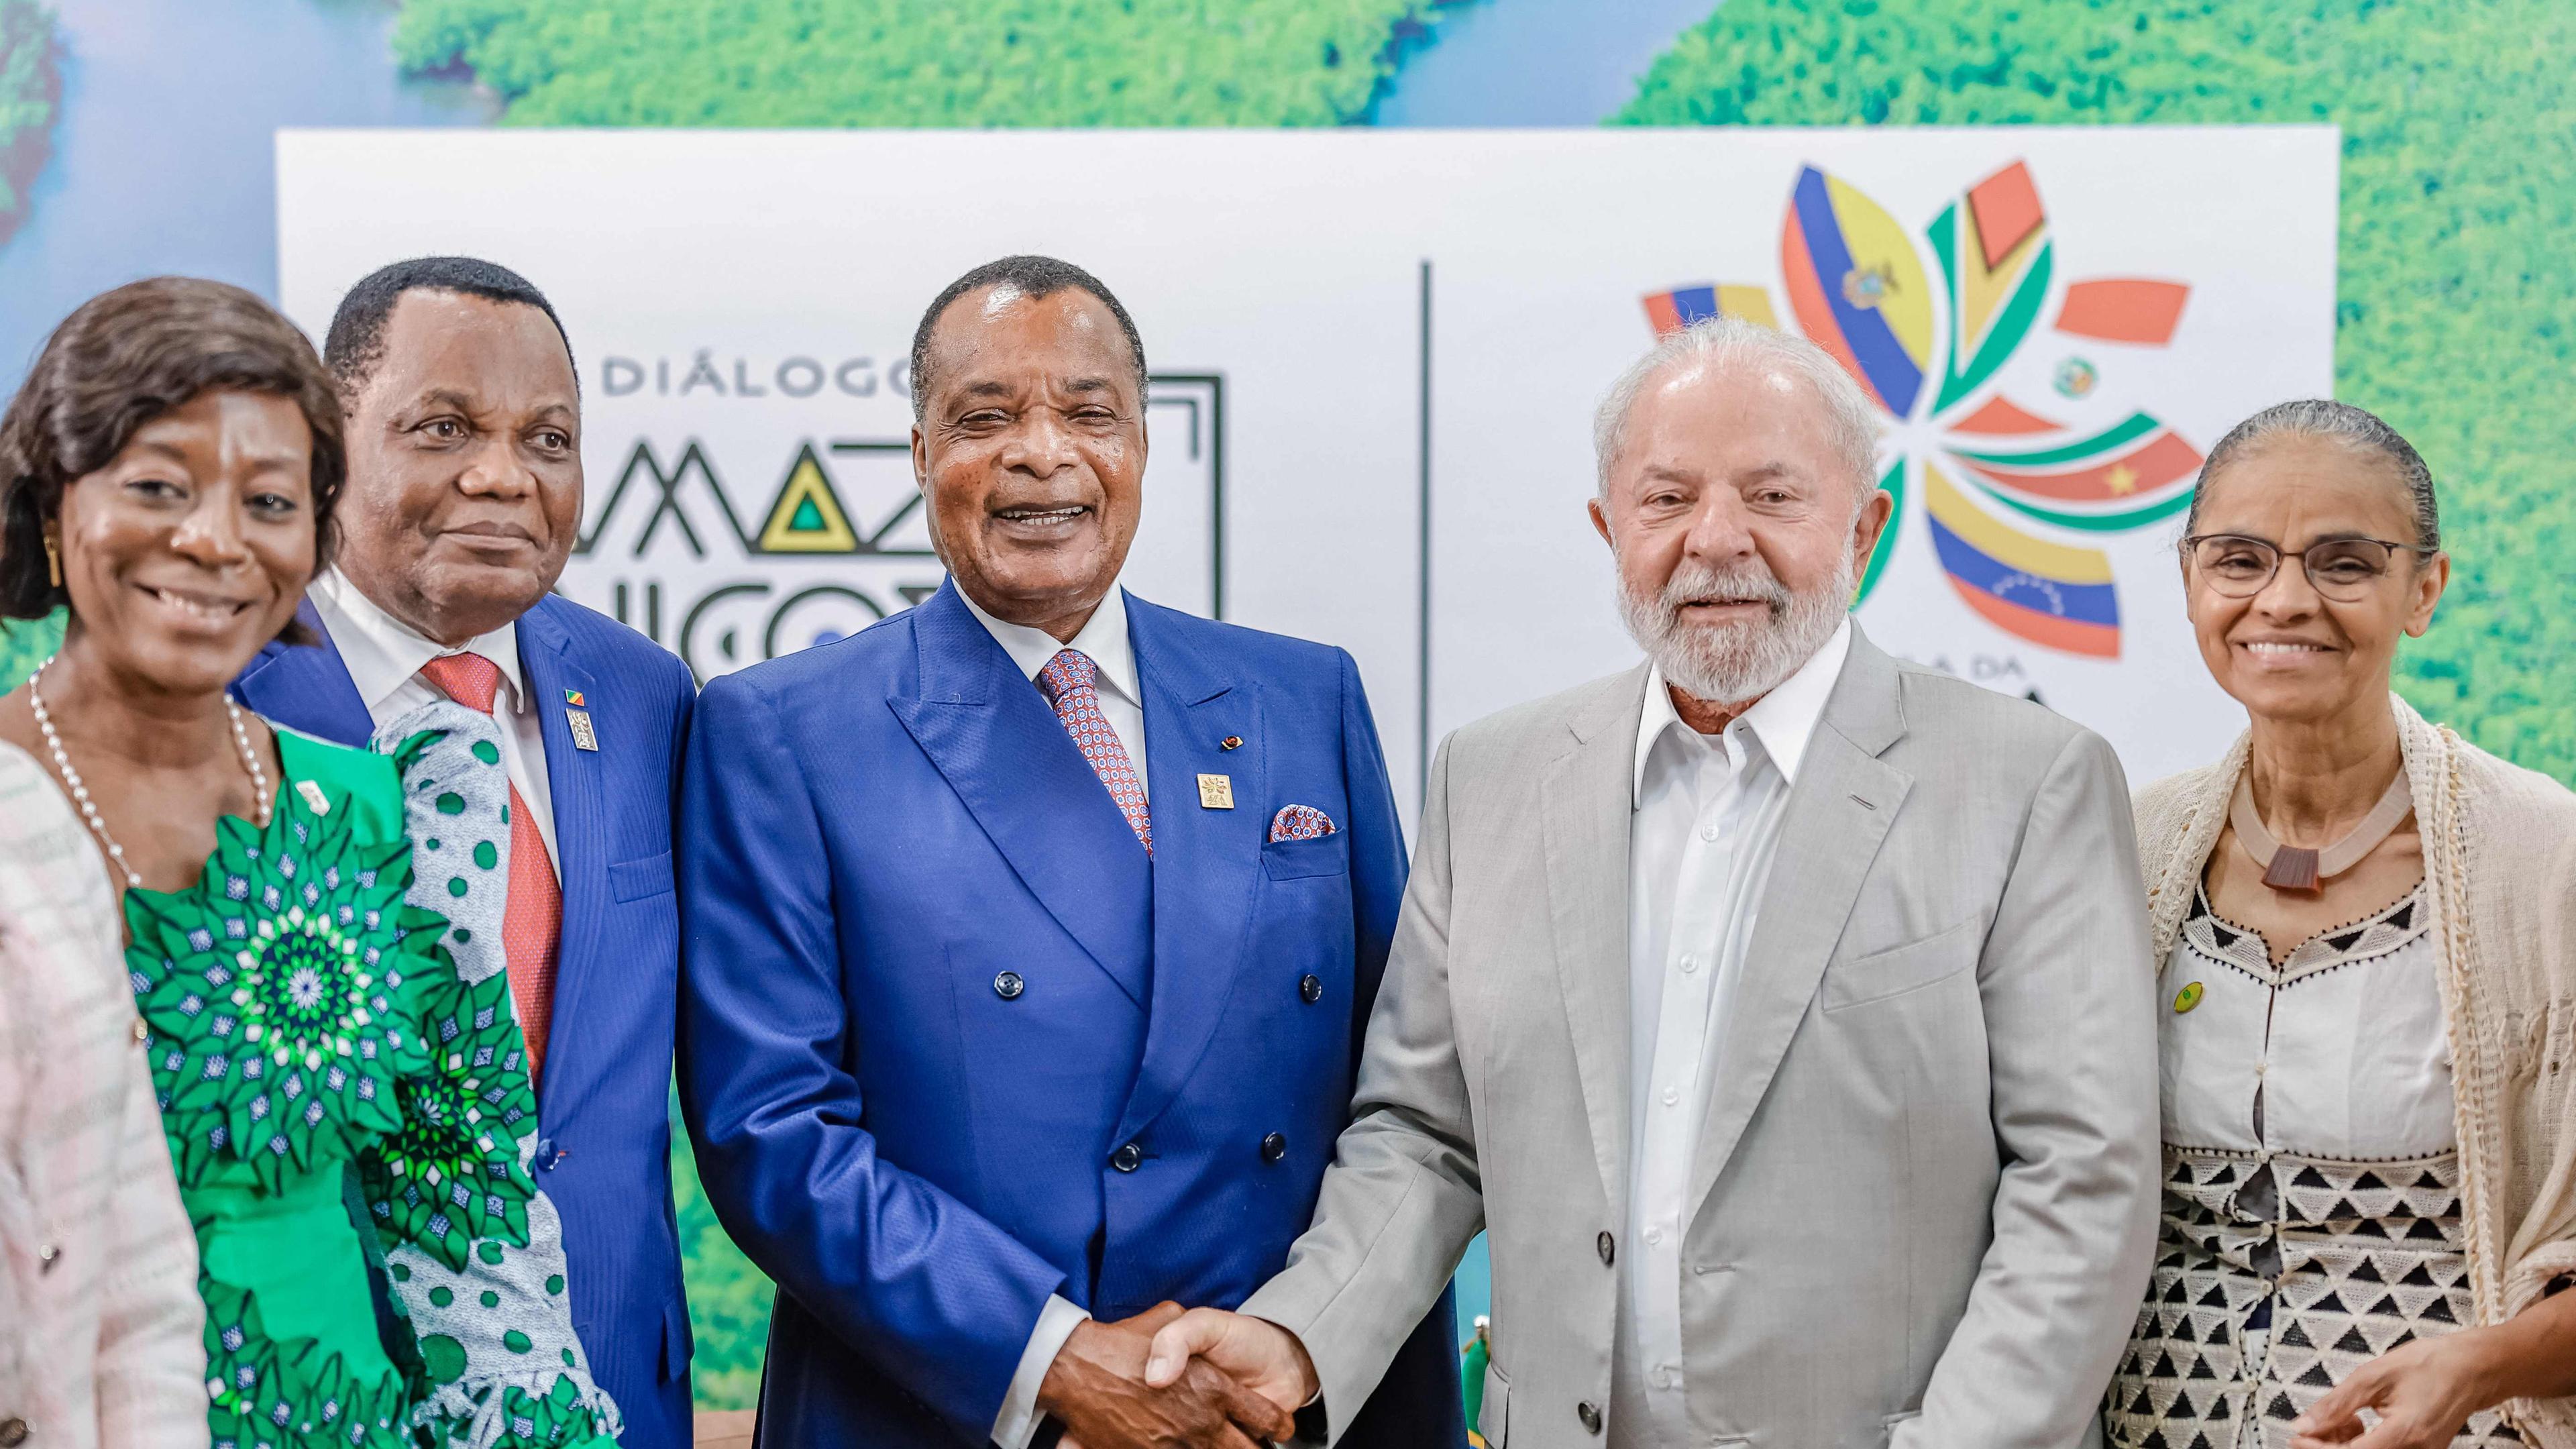 Der brasilianische Prädident Lula mit dem Präsidenten der Republik Kongo, Sassou